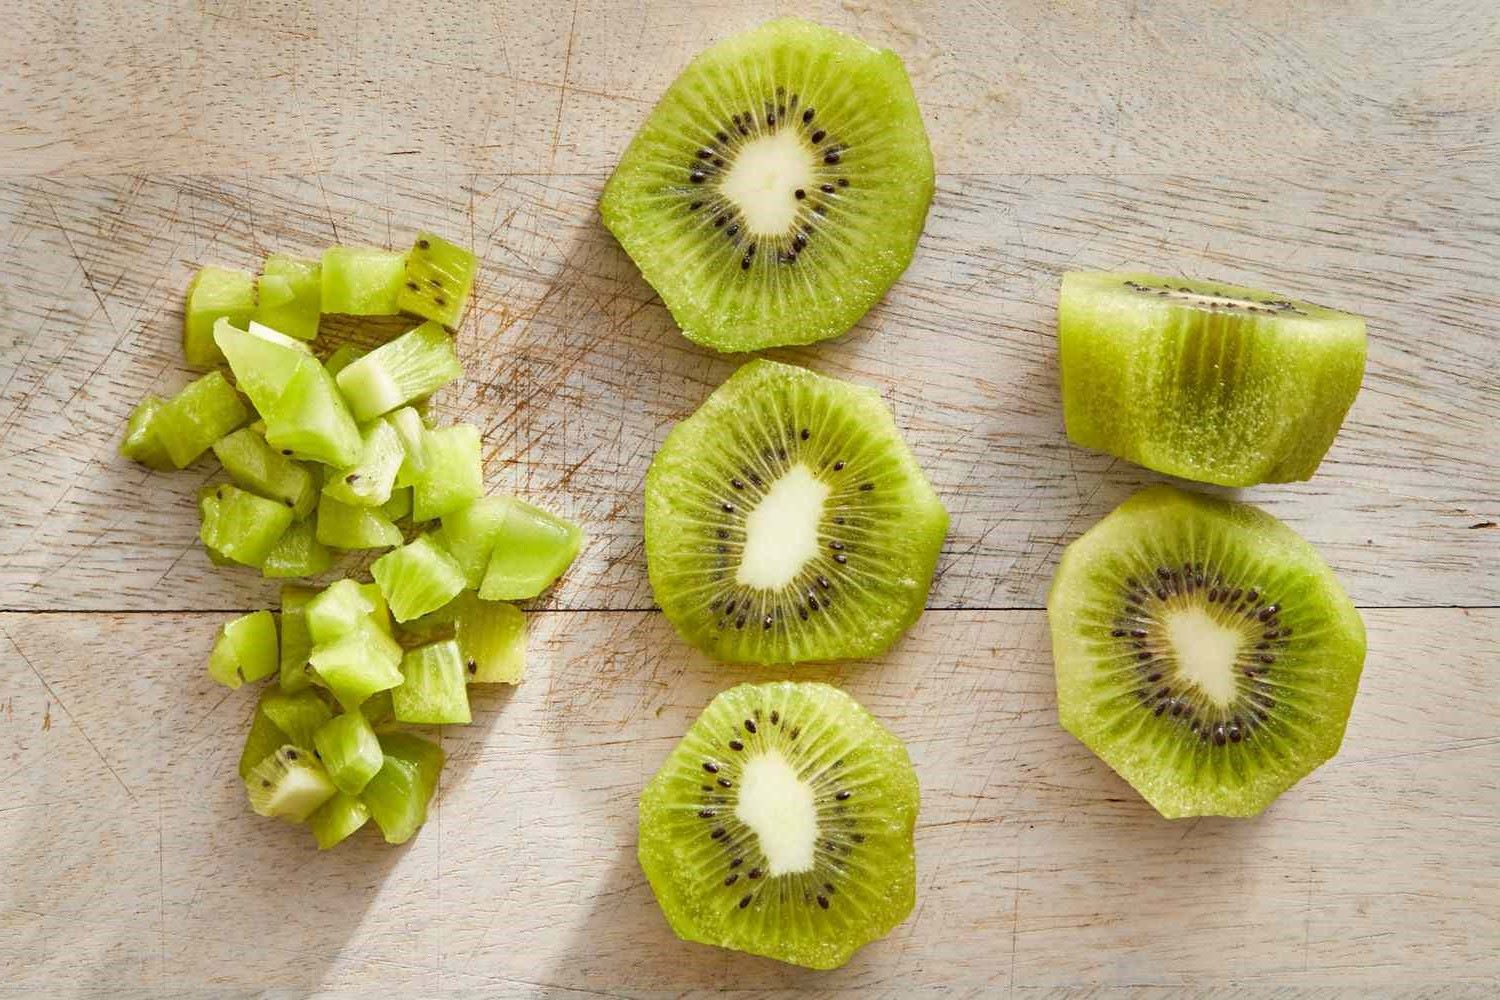 How To Cut A Kiwi